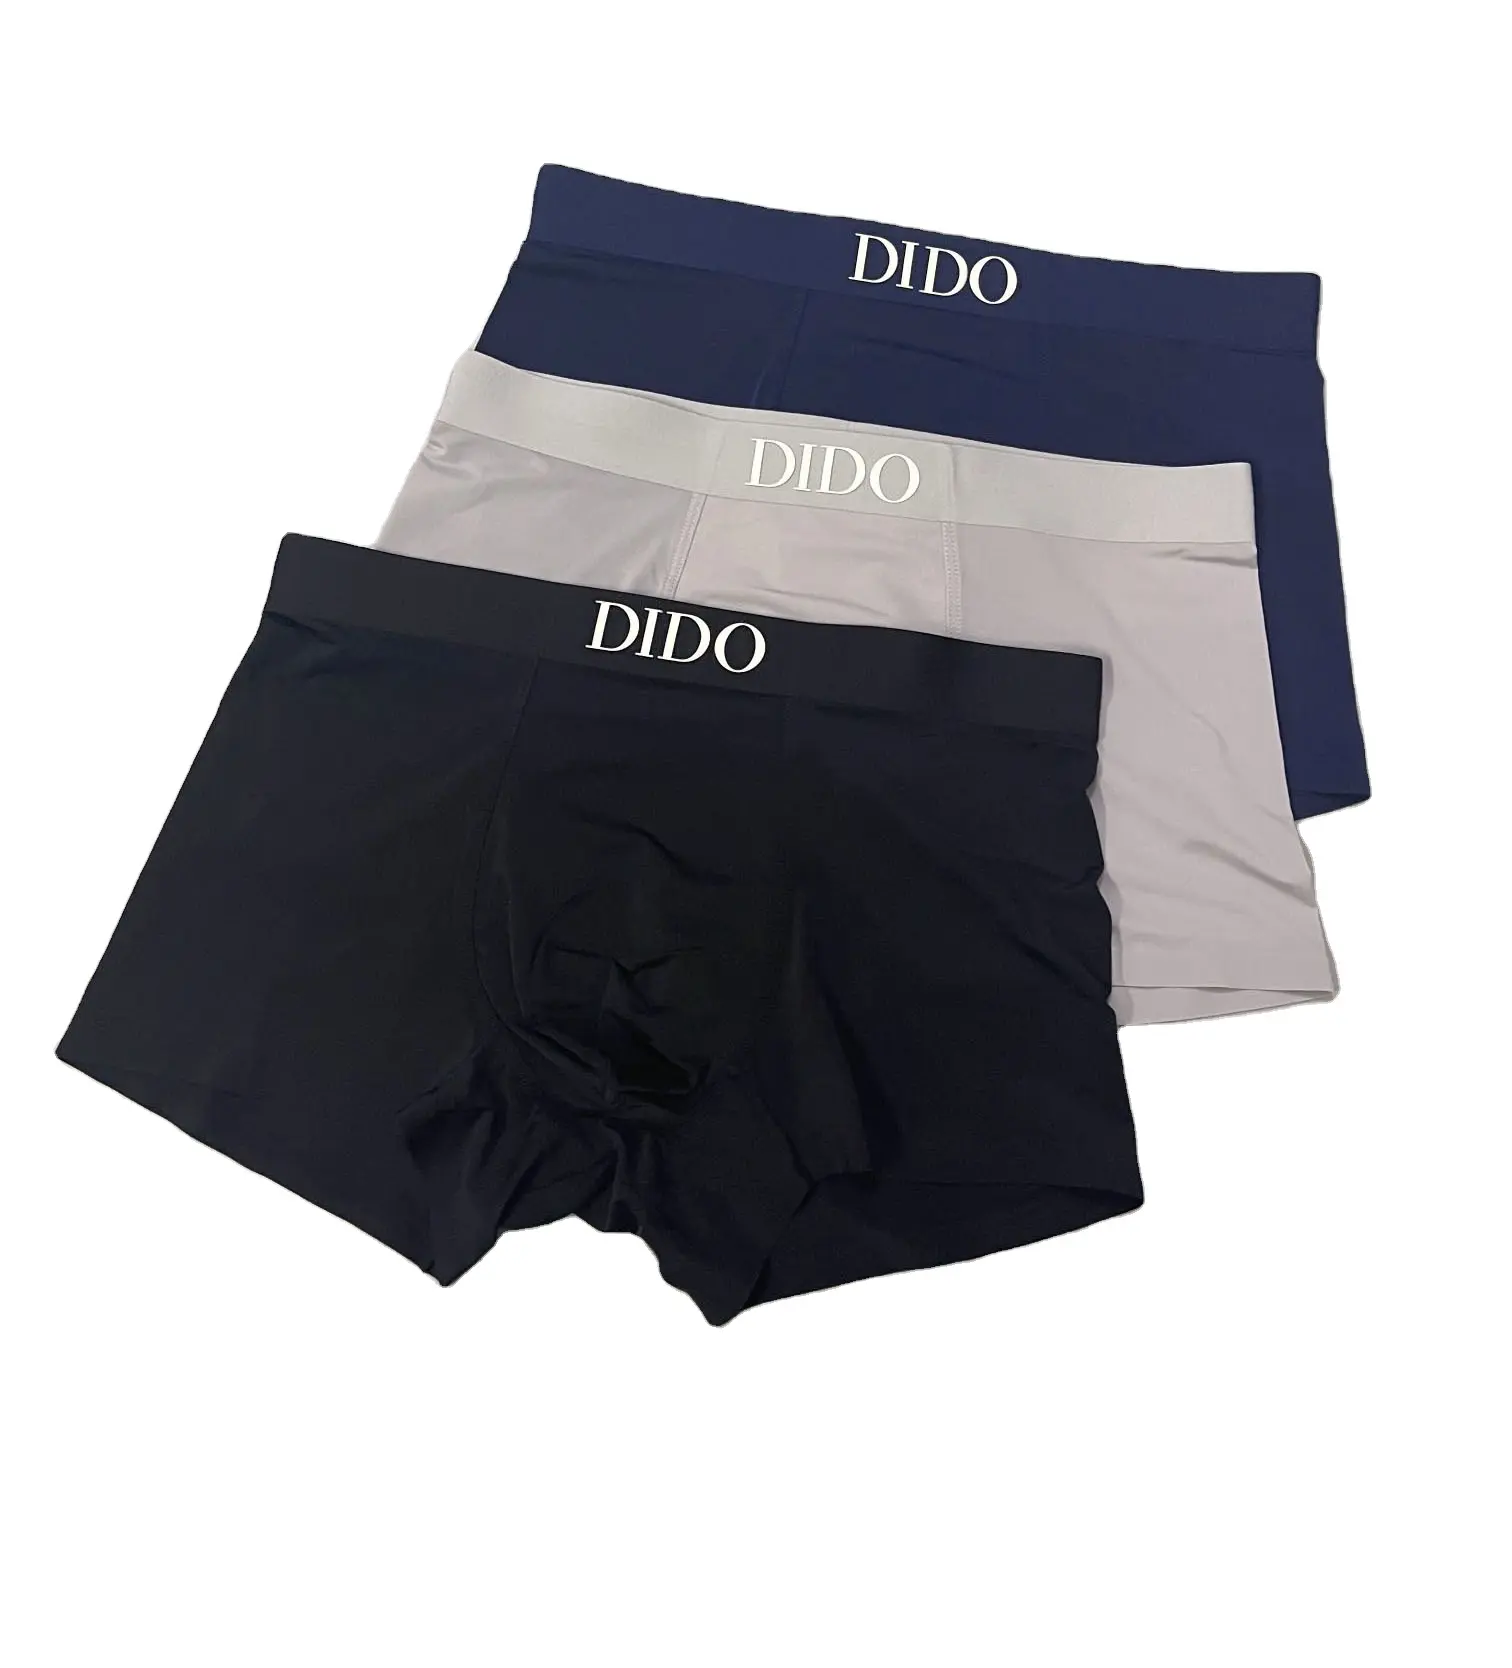 Designers Boxers For Men Underwear Brands Designer Underwear Men Plain Men's Cotton Underpants Wholesale